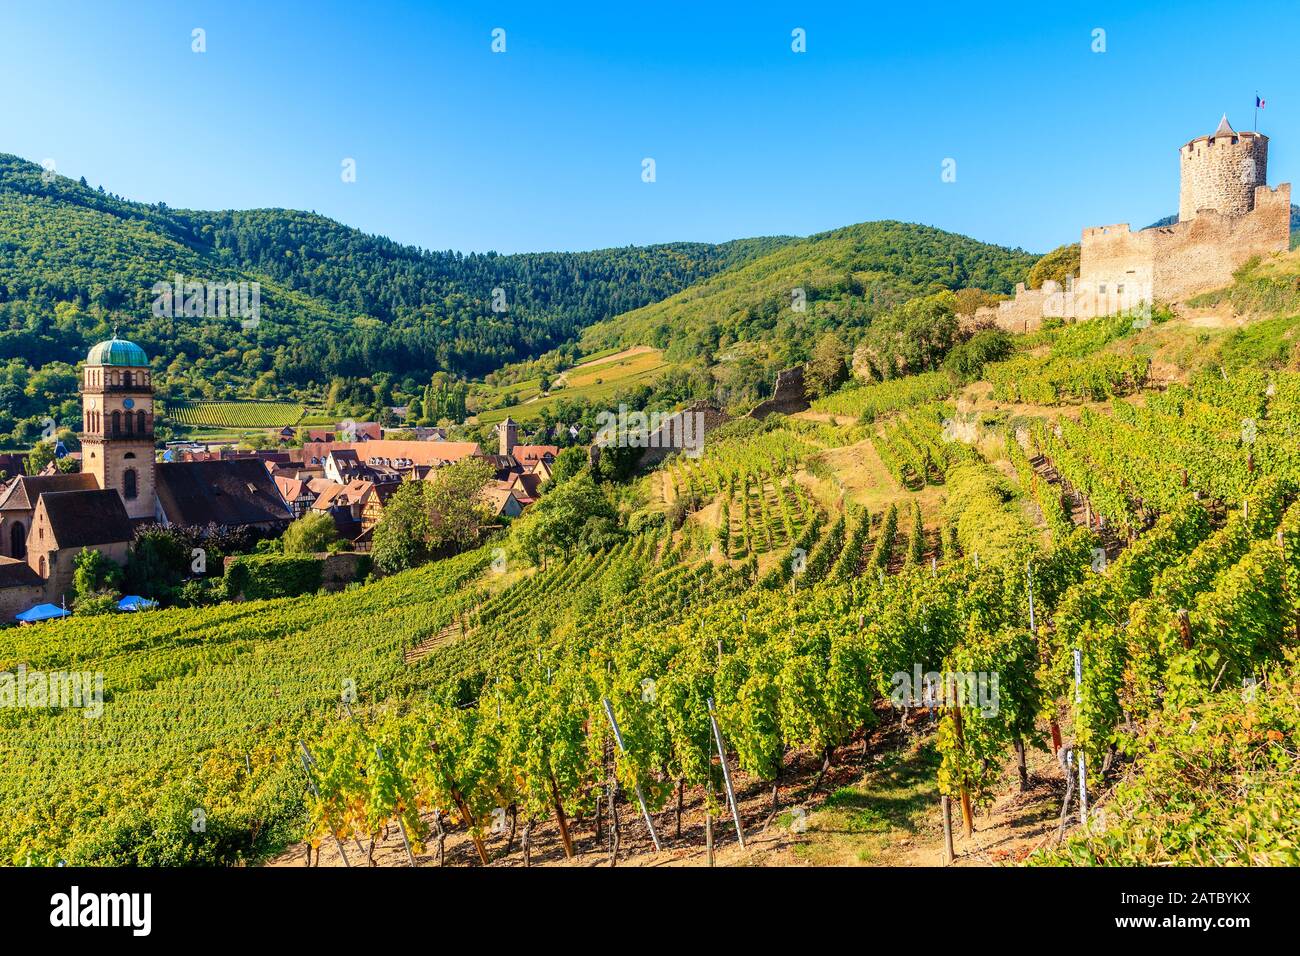 Castillo medieval en las colinas entre viñedos de Kaysersberg Village, en la ruta del vino de Alsacia, Francia Foto de stock